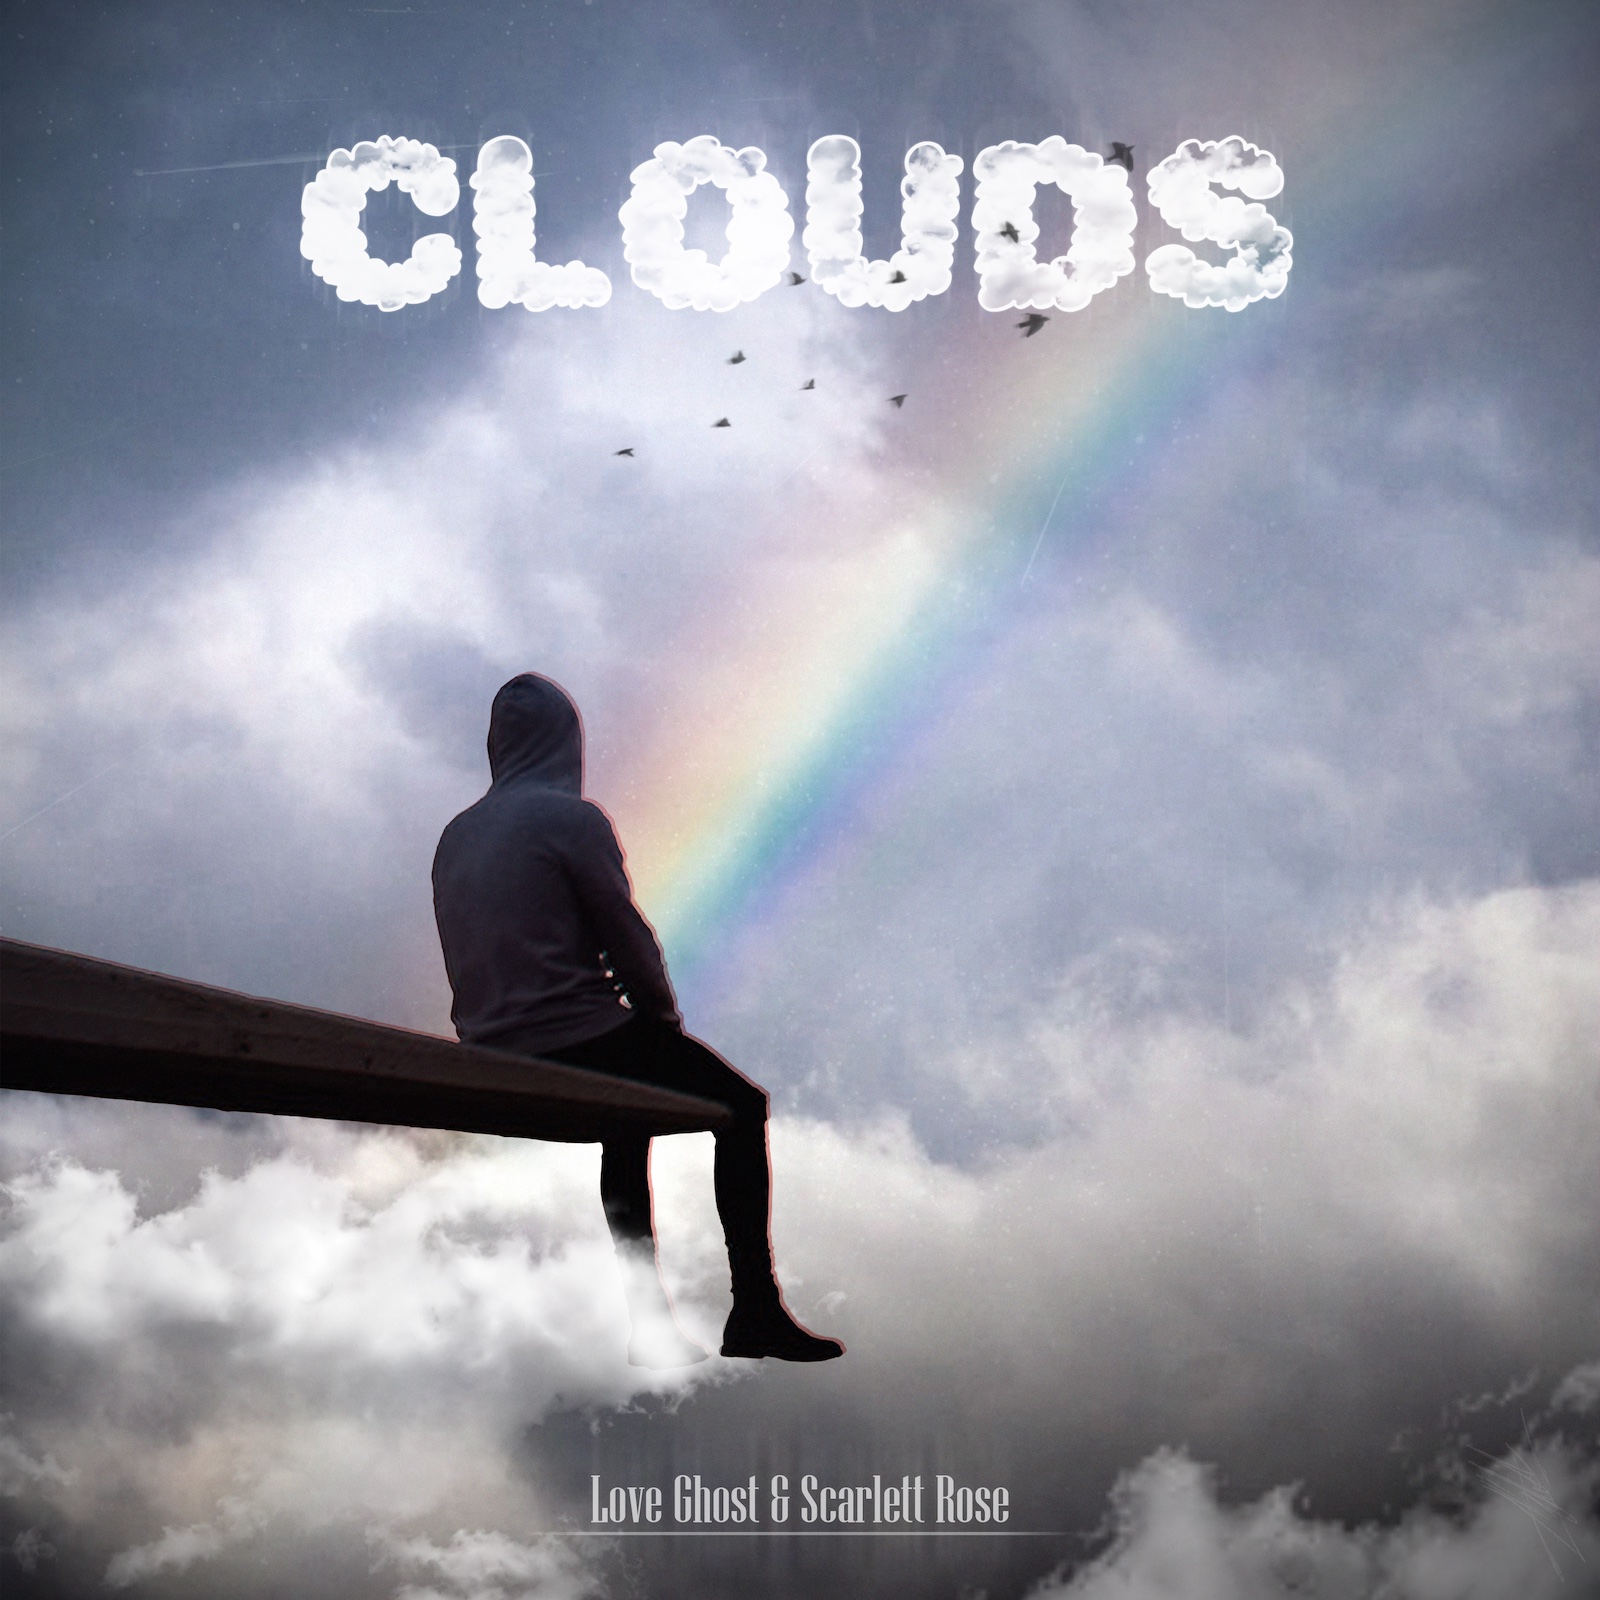 Love Ghost, è uscito “Clouds” con la collaborazione di Scarlett Rose